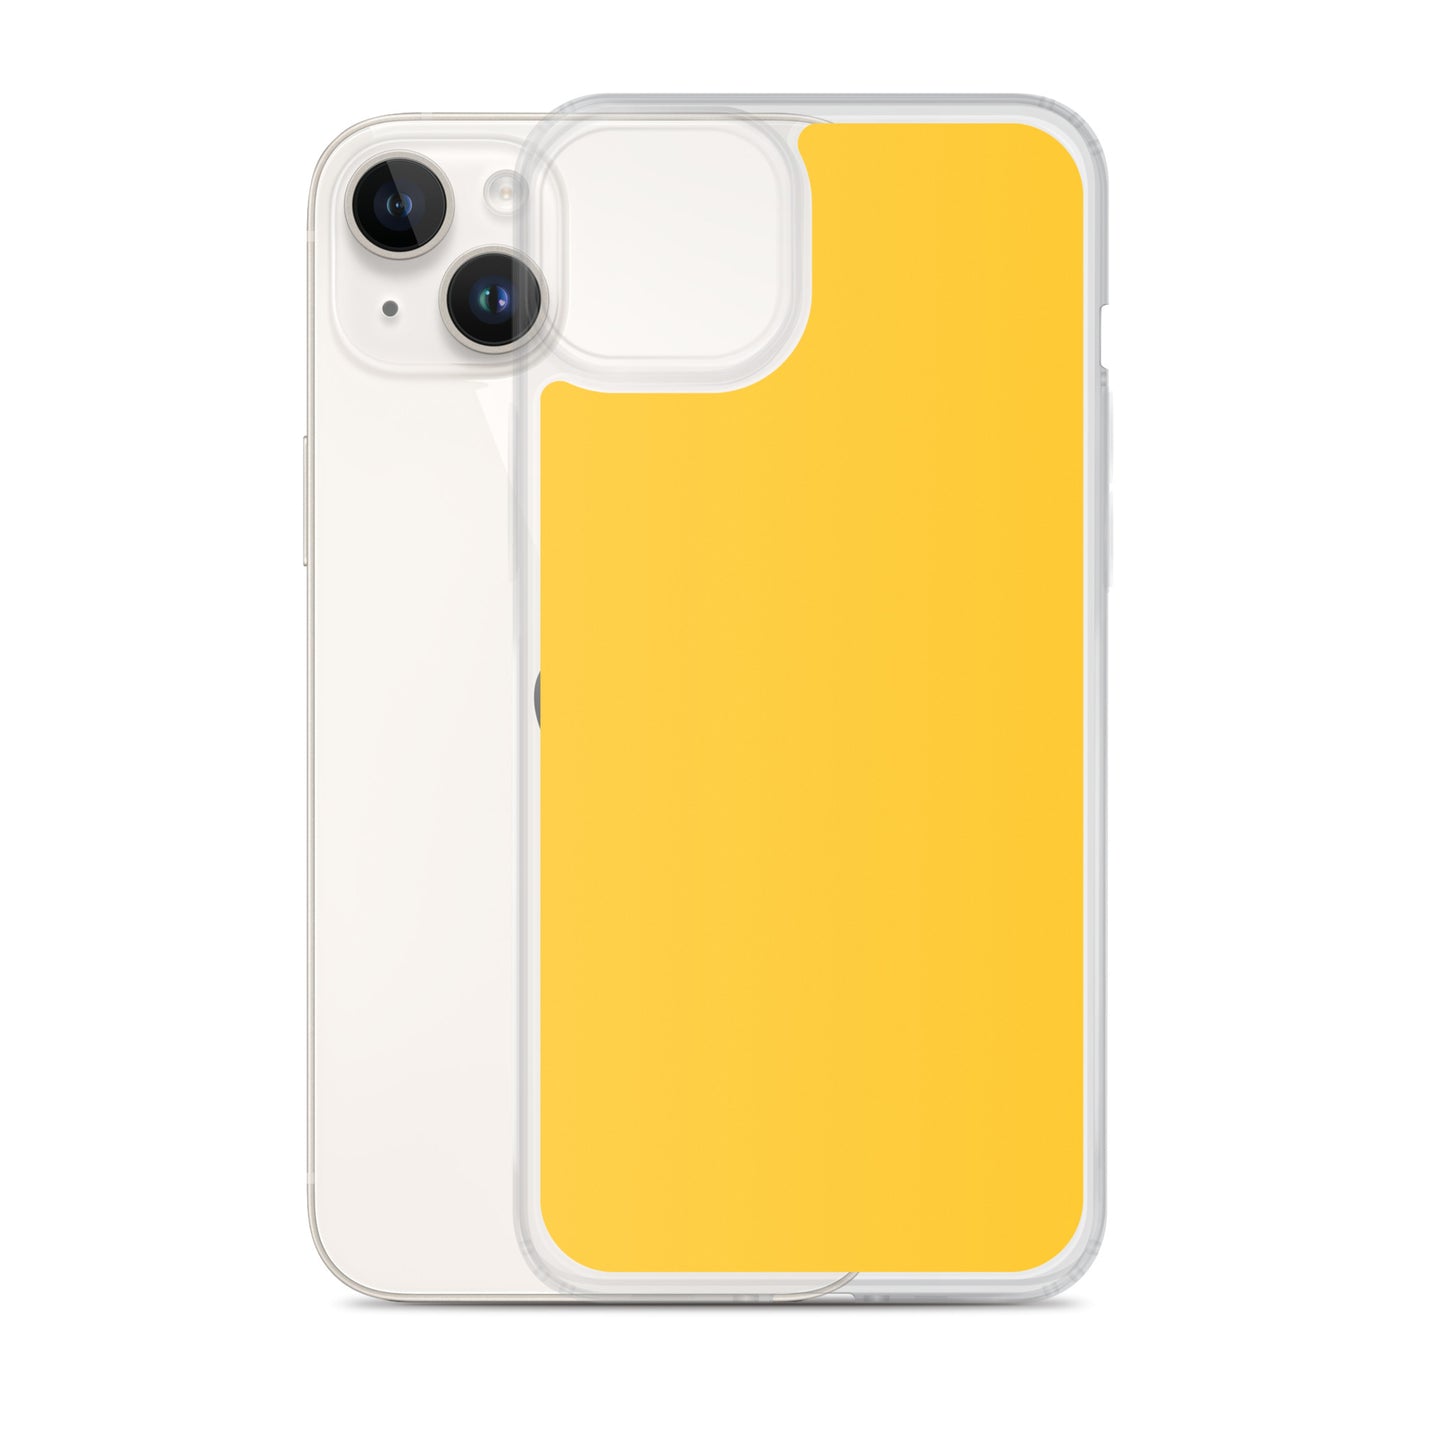 Coque iPhone jaune